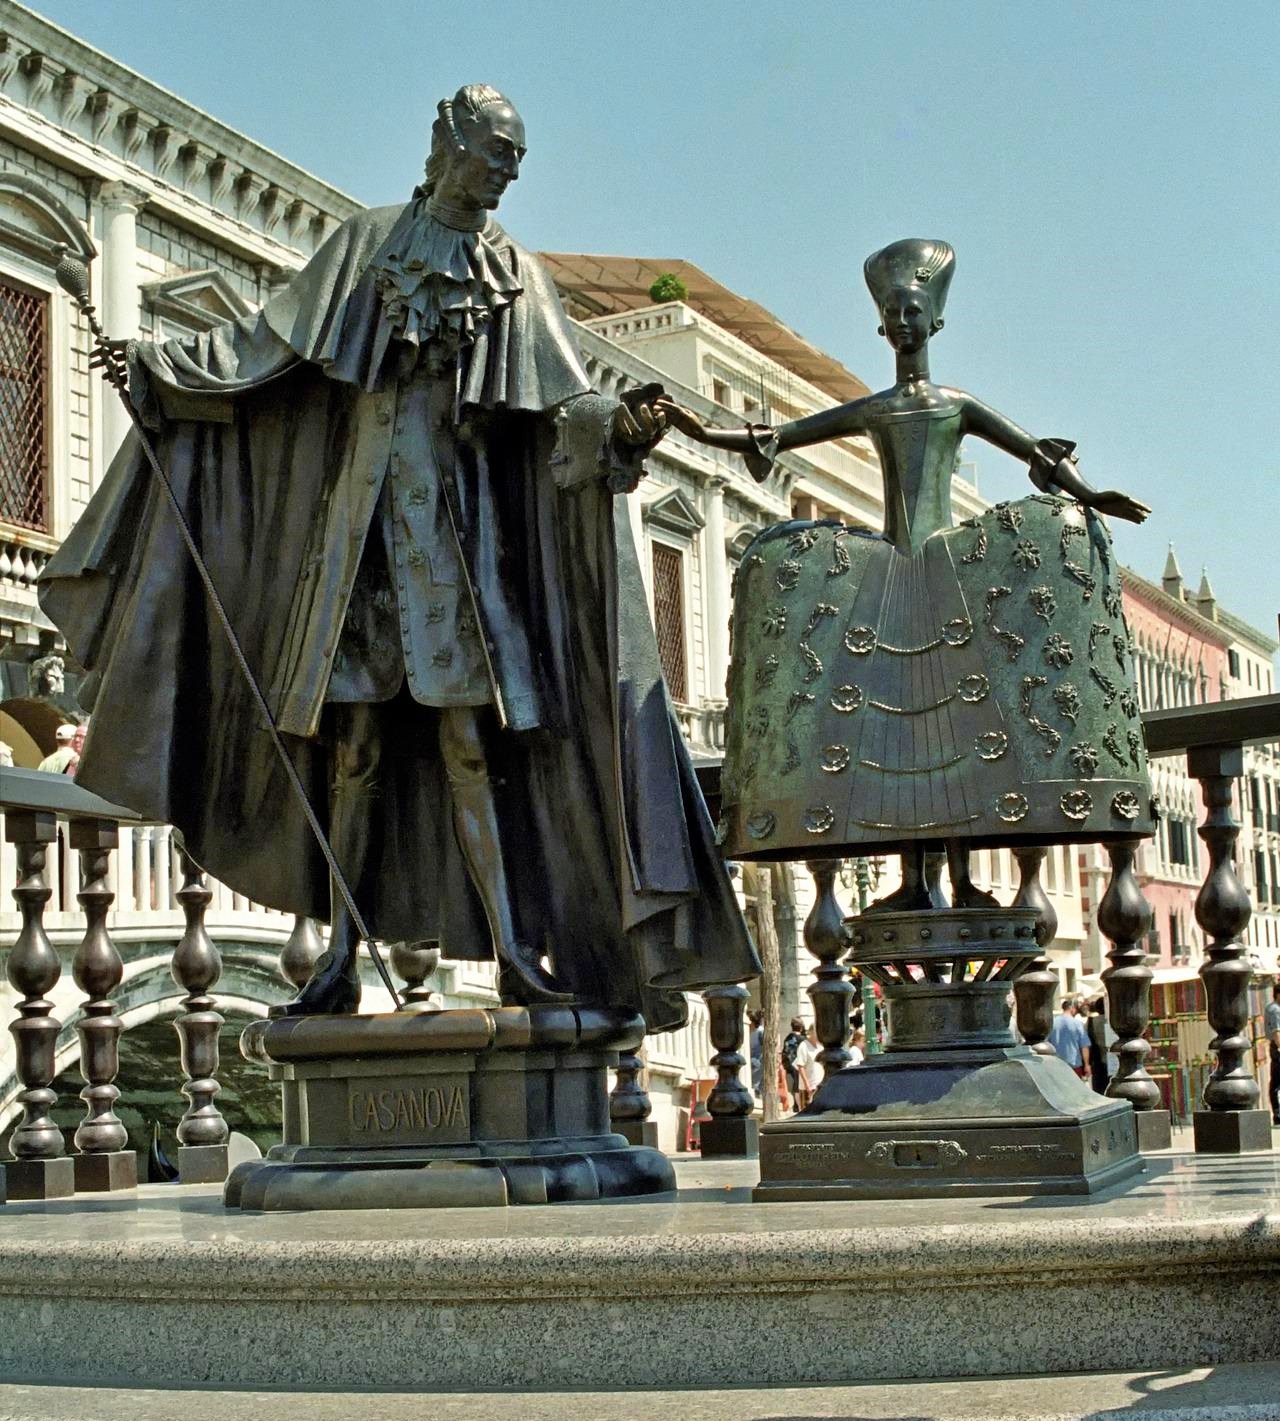 Statue of Casanova in Venice